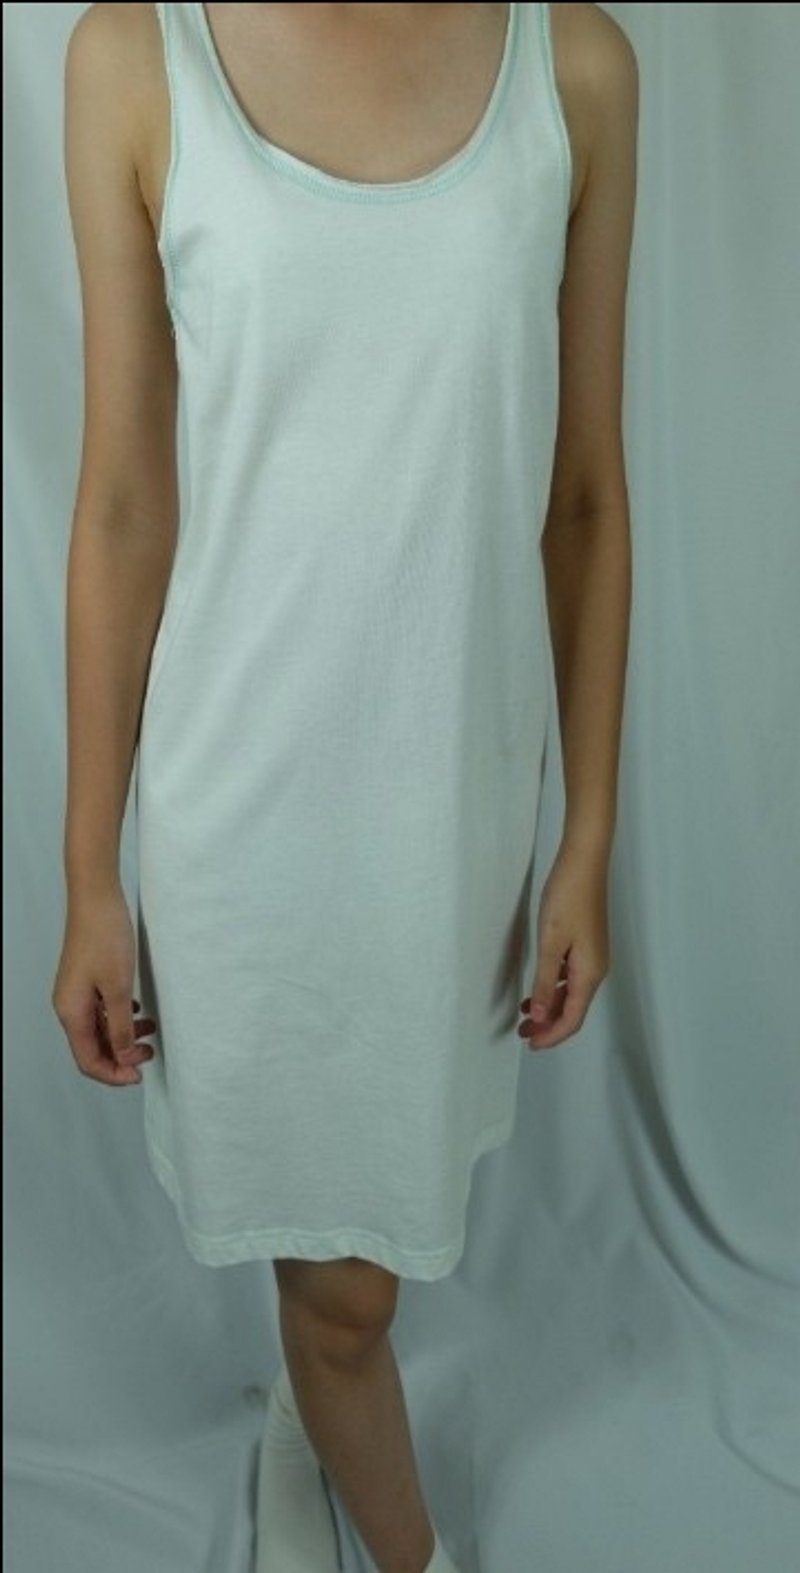 Simple power Gain Giogio classic home vest long version T (100% organic cotton) - Women's Vests - Cotton & Hemp White